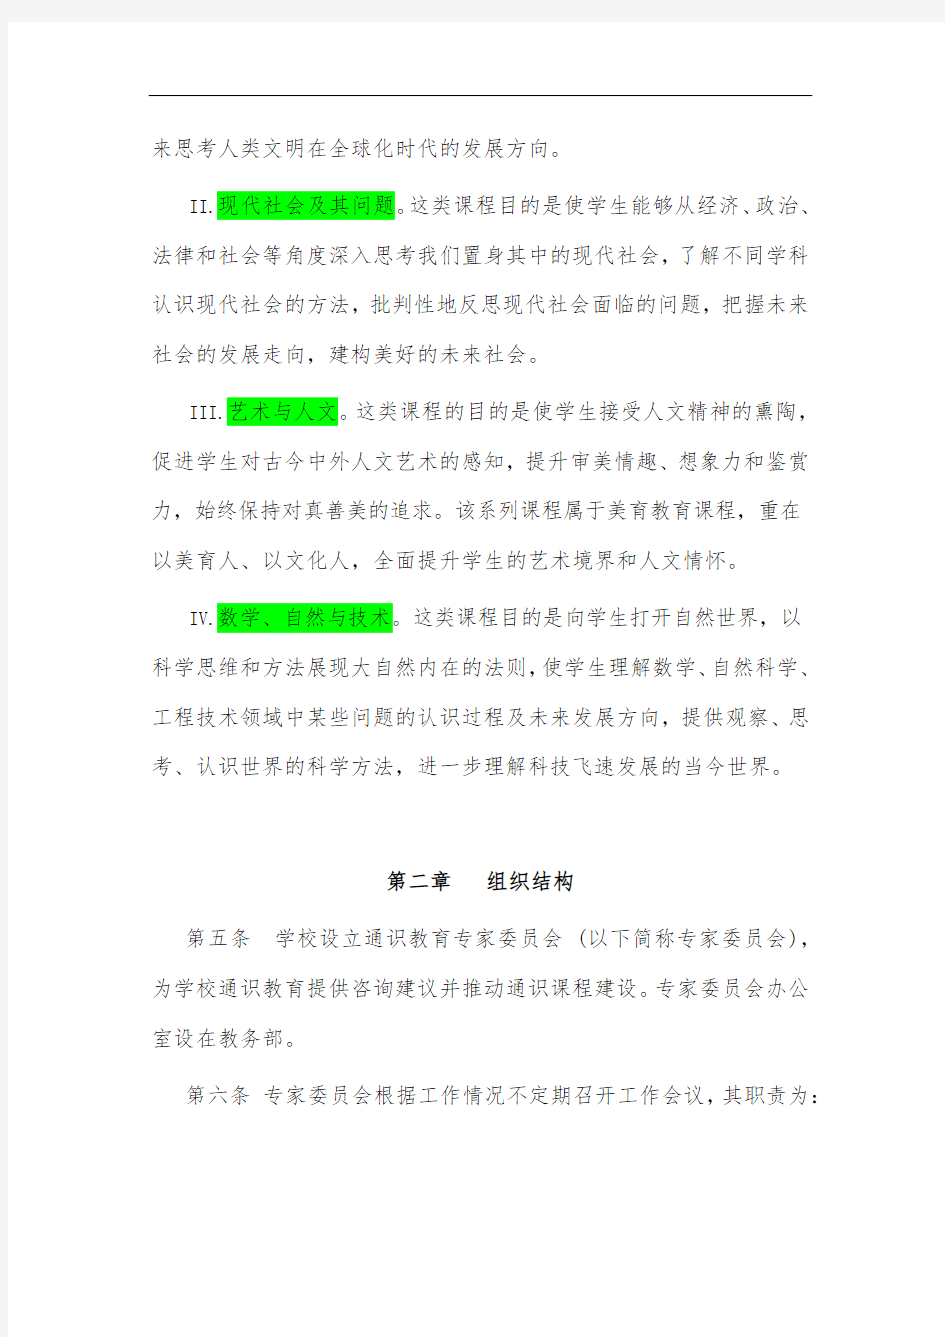 《北京大学通识教育课程管理办法》(试行)